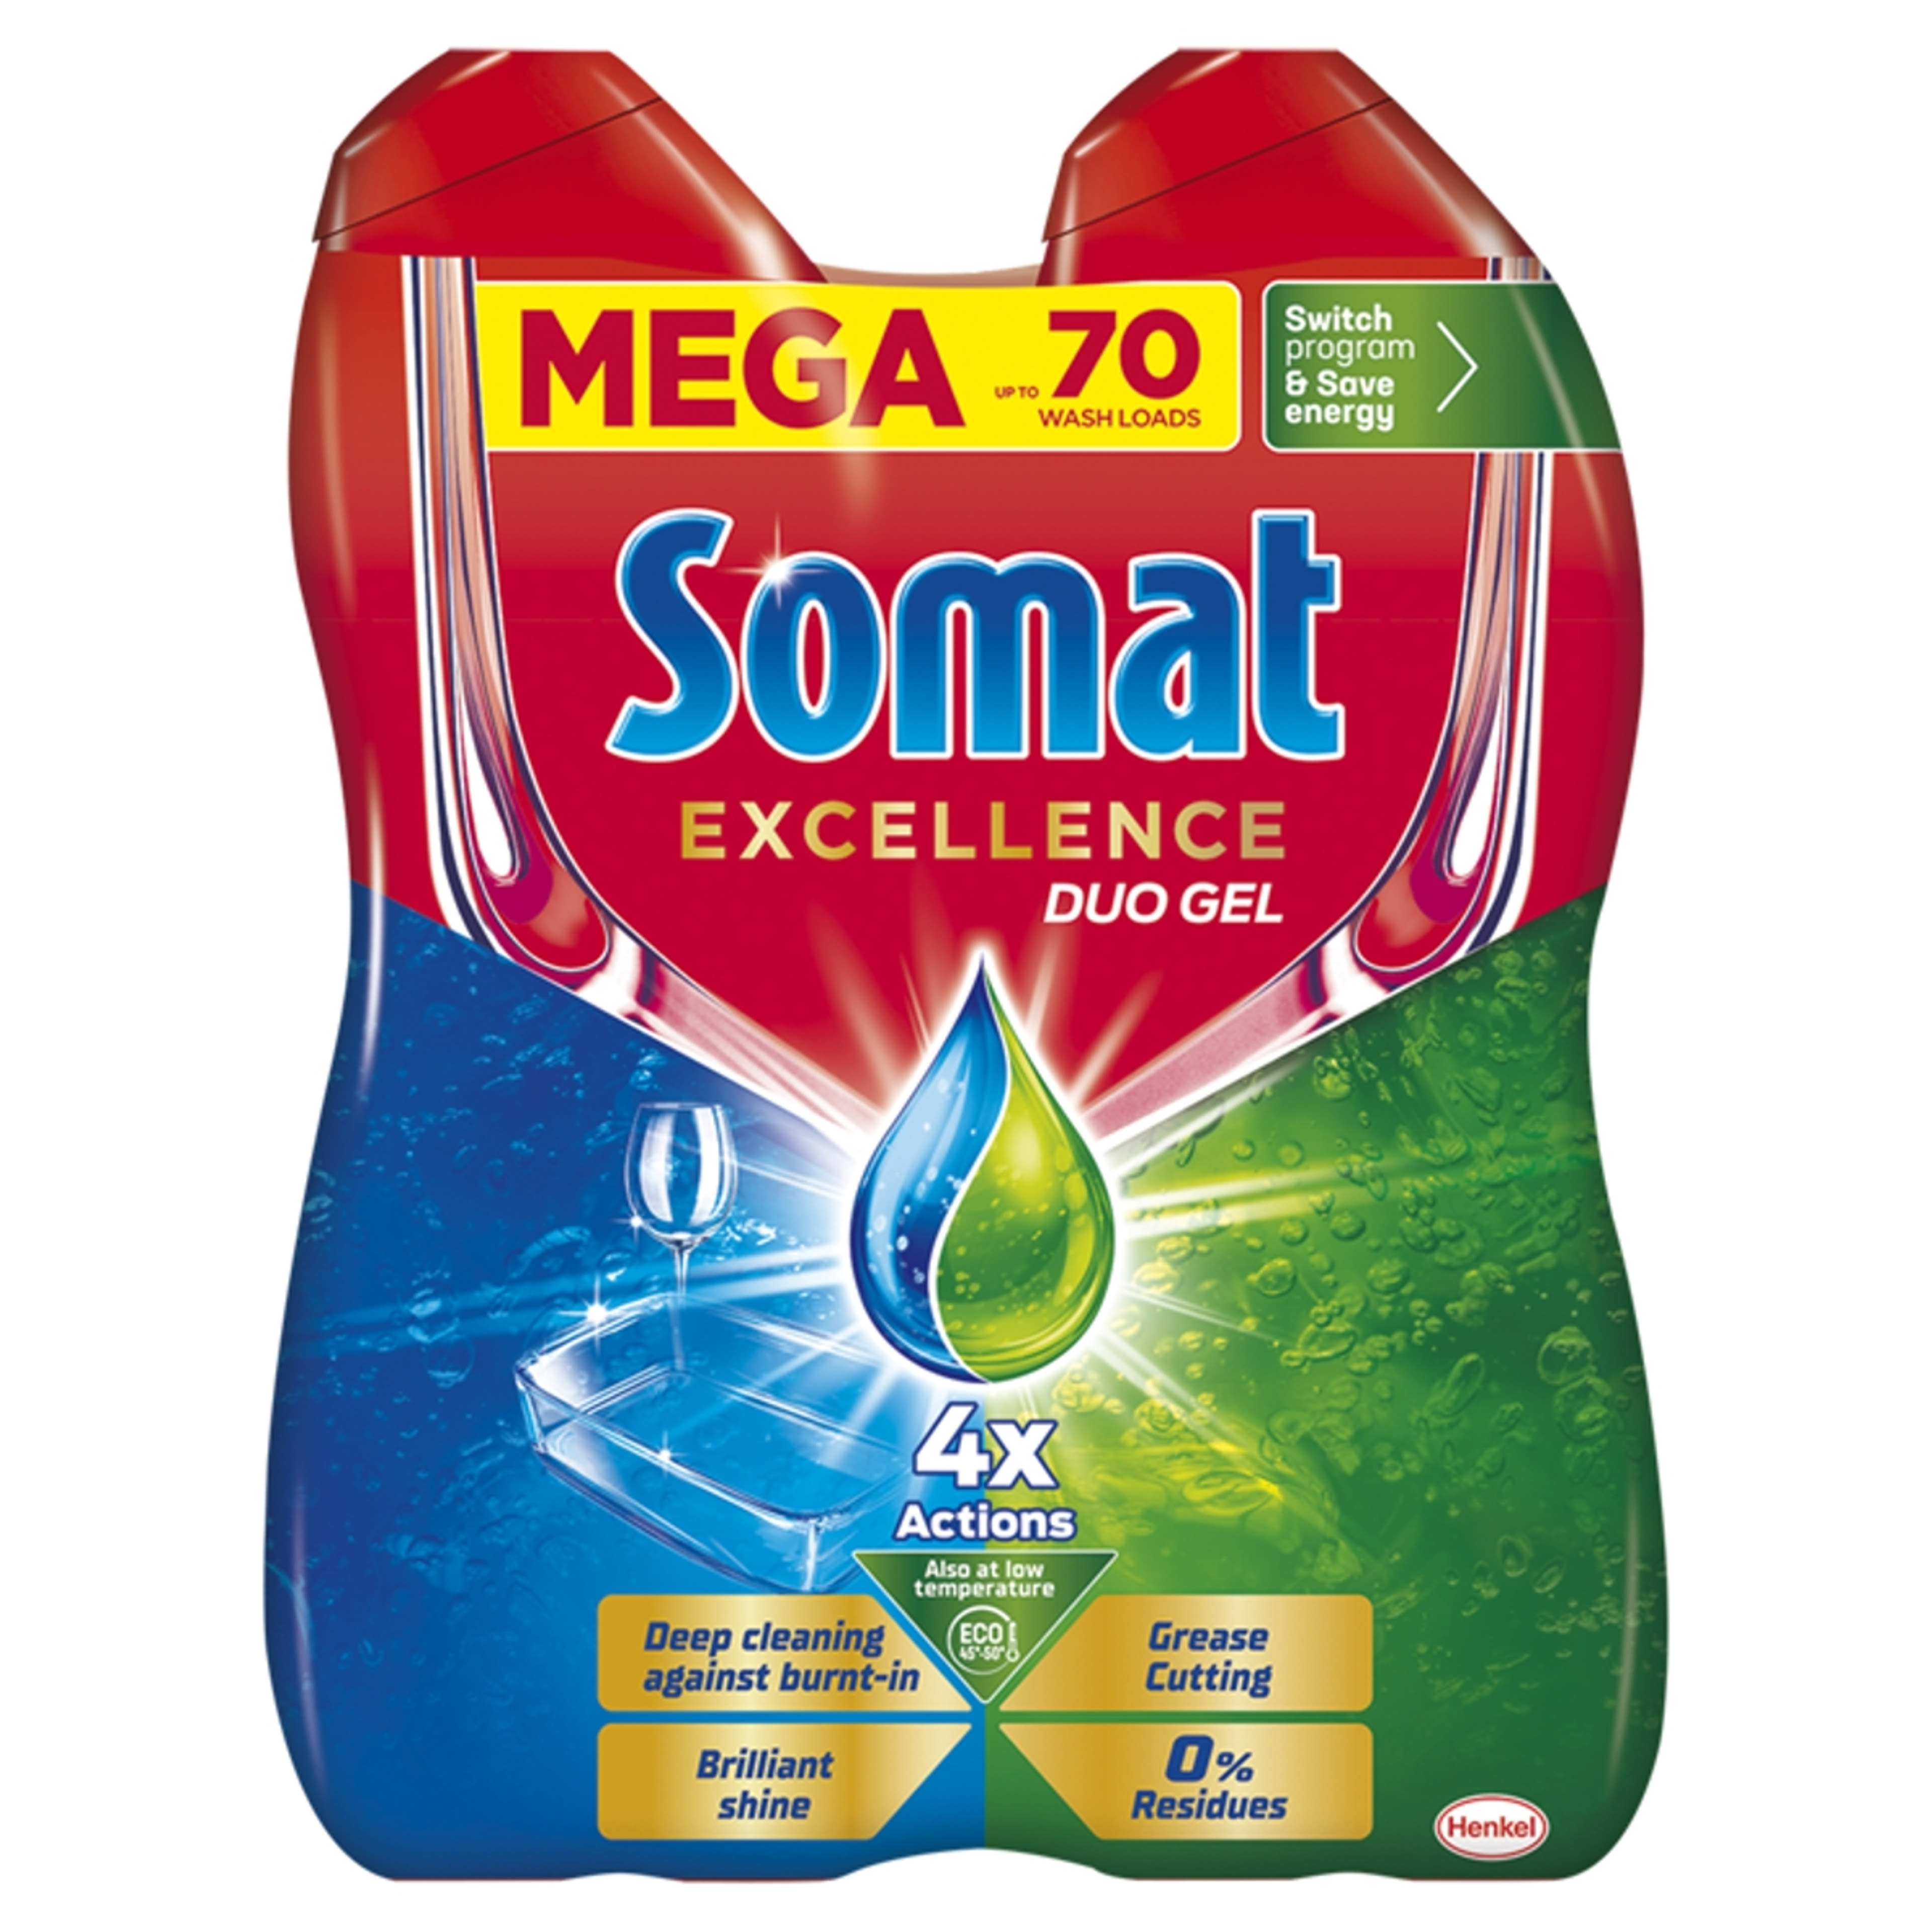 Somat Excellence Duo Gel gépi mosogatószer gél 70 mosogatás 2 x 630 ml - 1260 ml-1